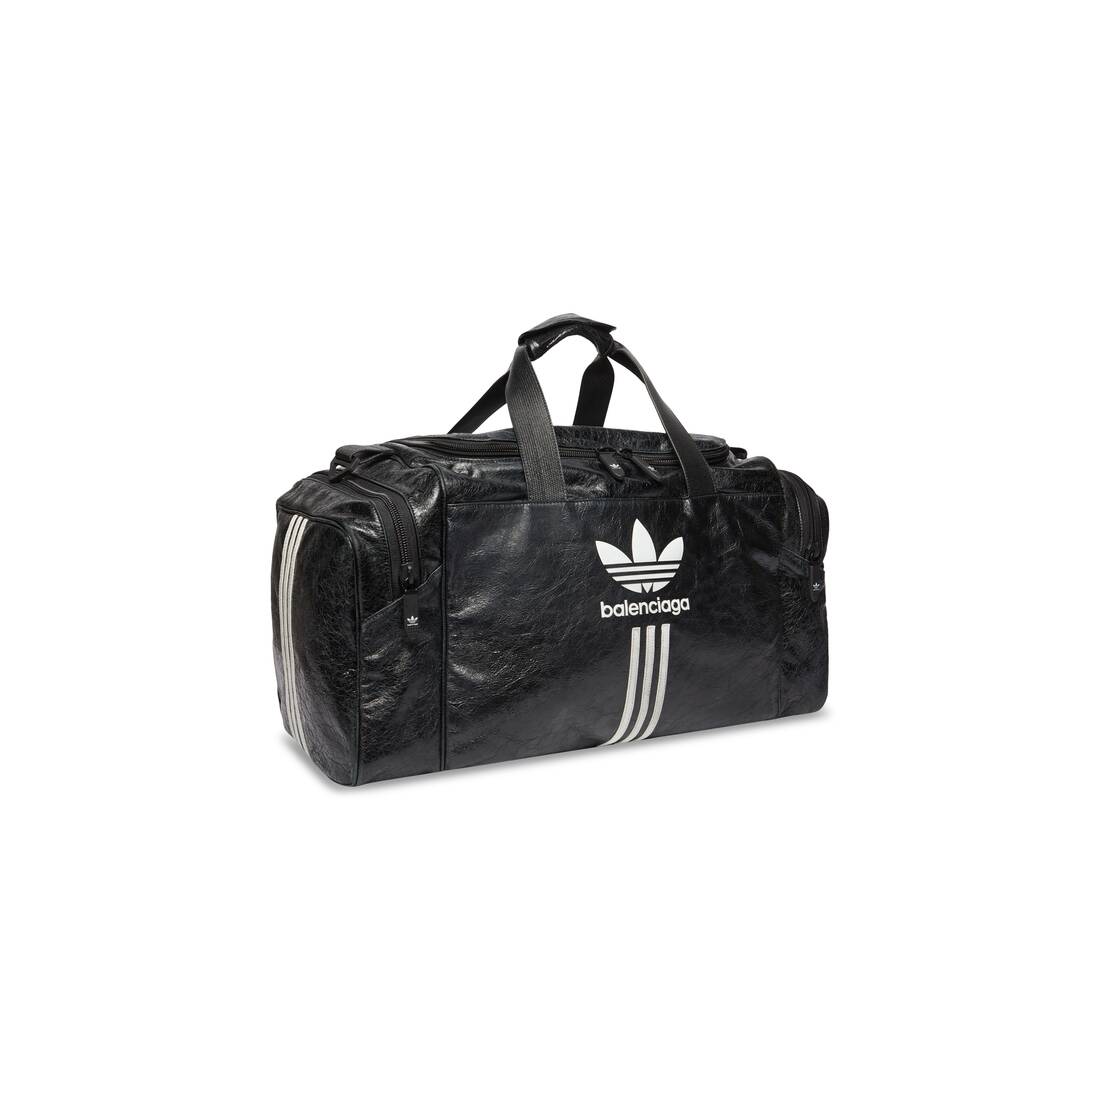 Preservativo canal teatro Men's Balenciaga / Adidas Gym Bag in Black | Balenciaga US